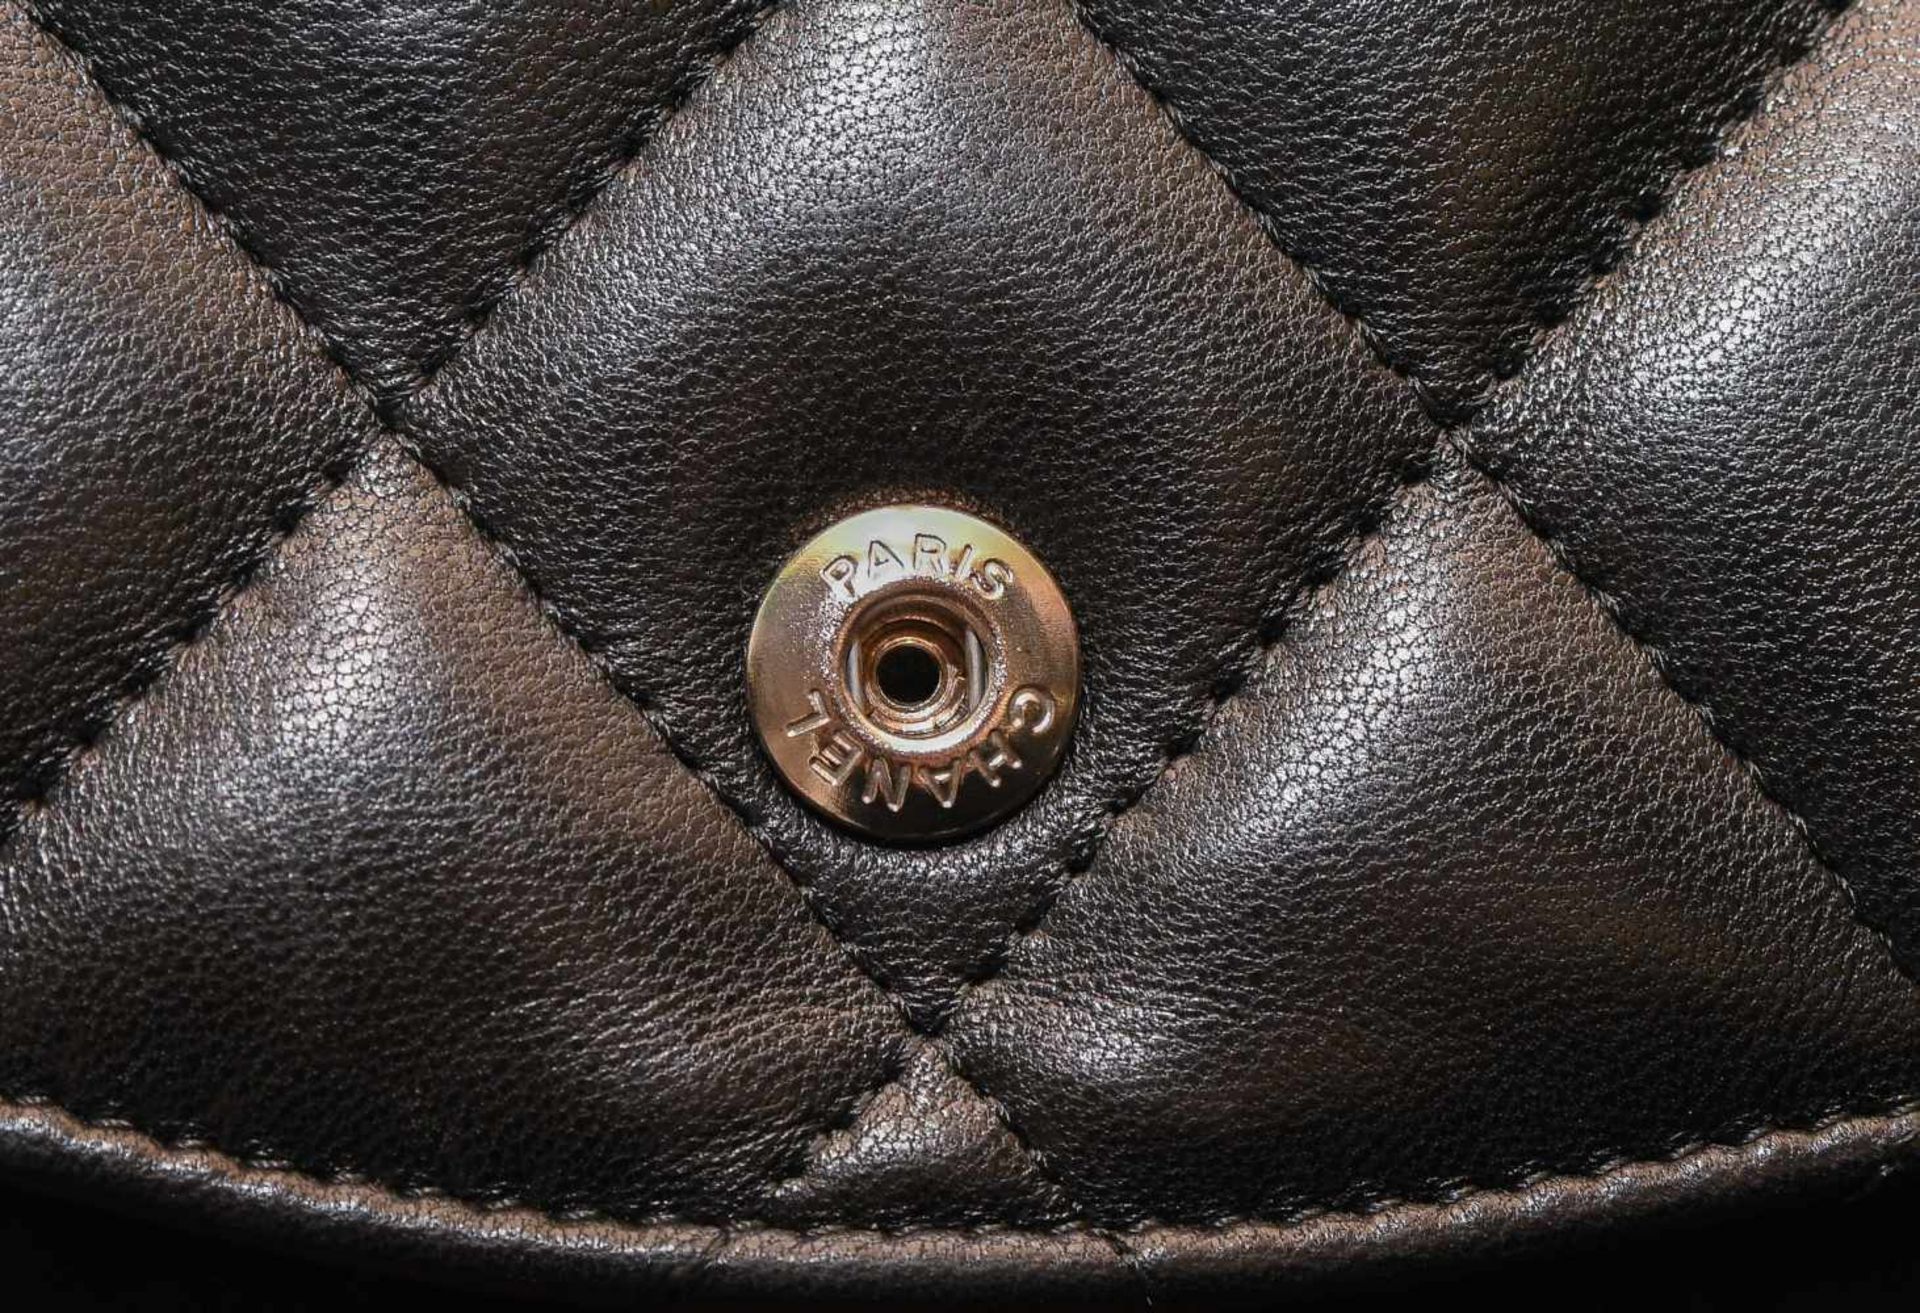 Chanel, Handtasche "Timeless" Jumbo Aus schwarzem Leder mit gestepptem Rautenmuster. - Bild 4 aus 13